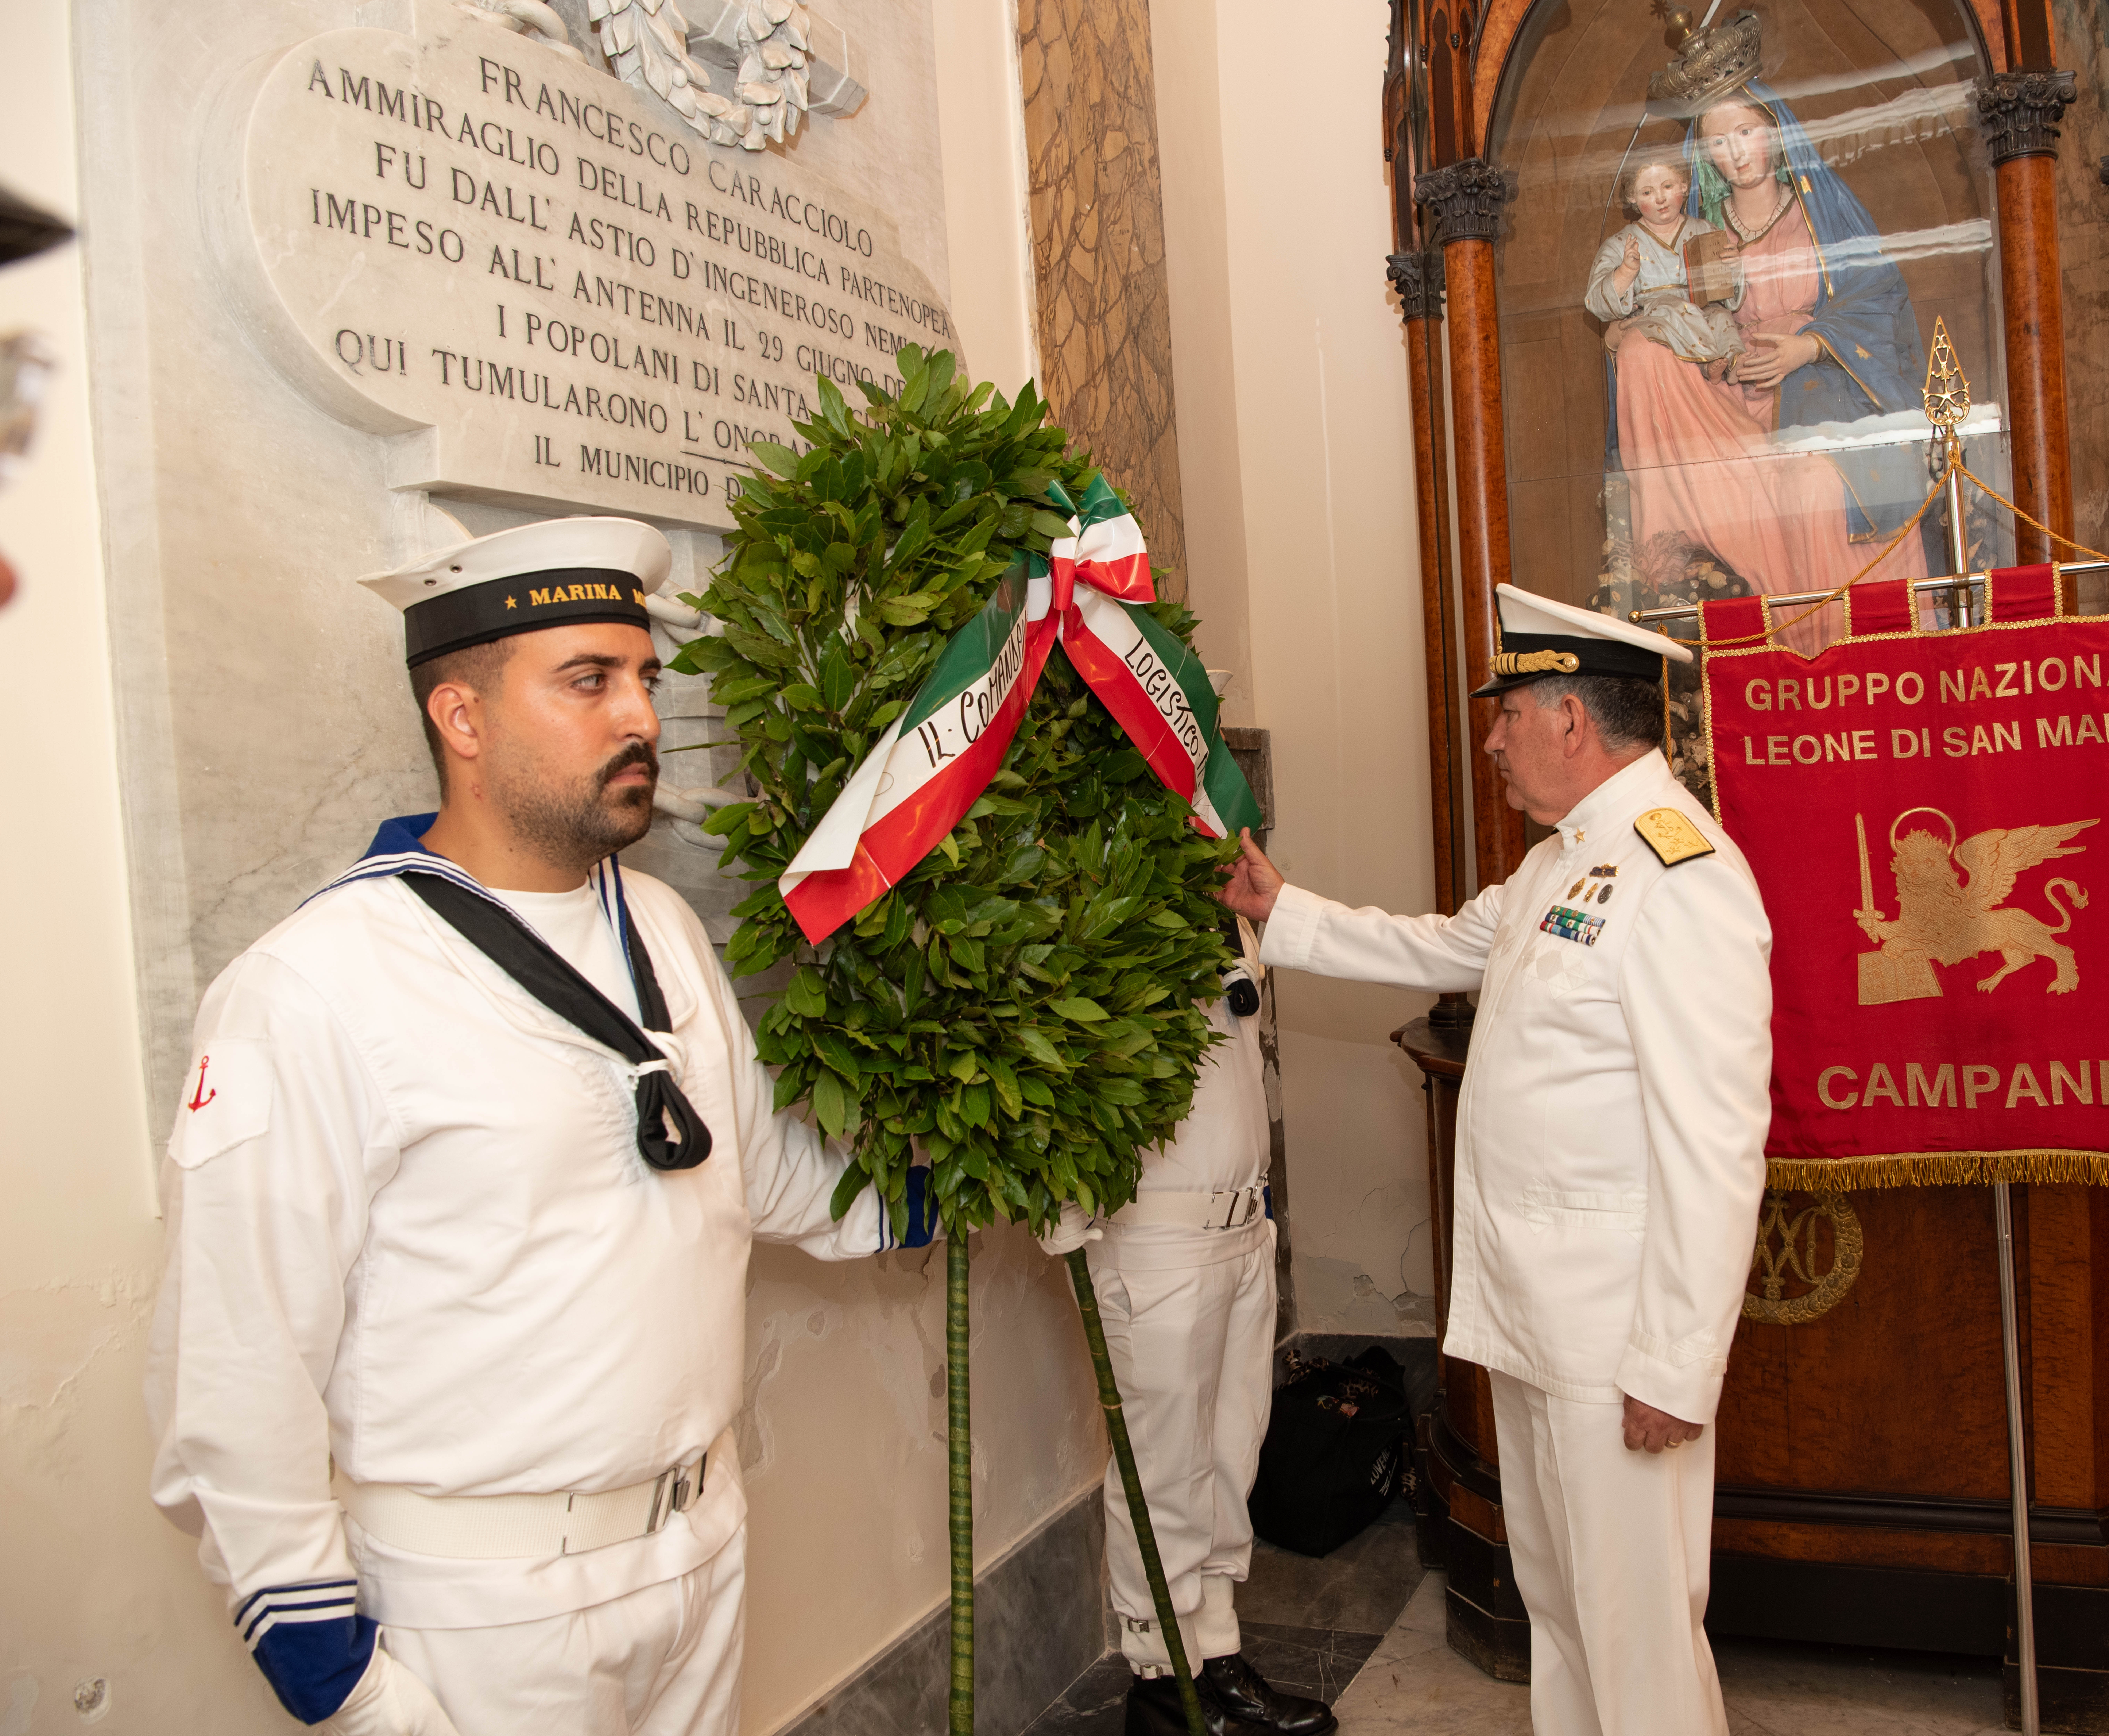 Napoli: Marina Militare, ricordato ammiraglio Francesco Caracciolo